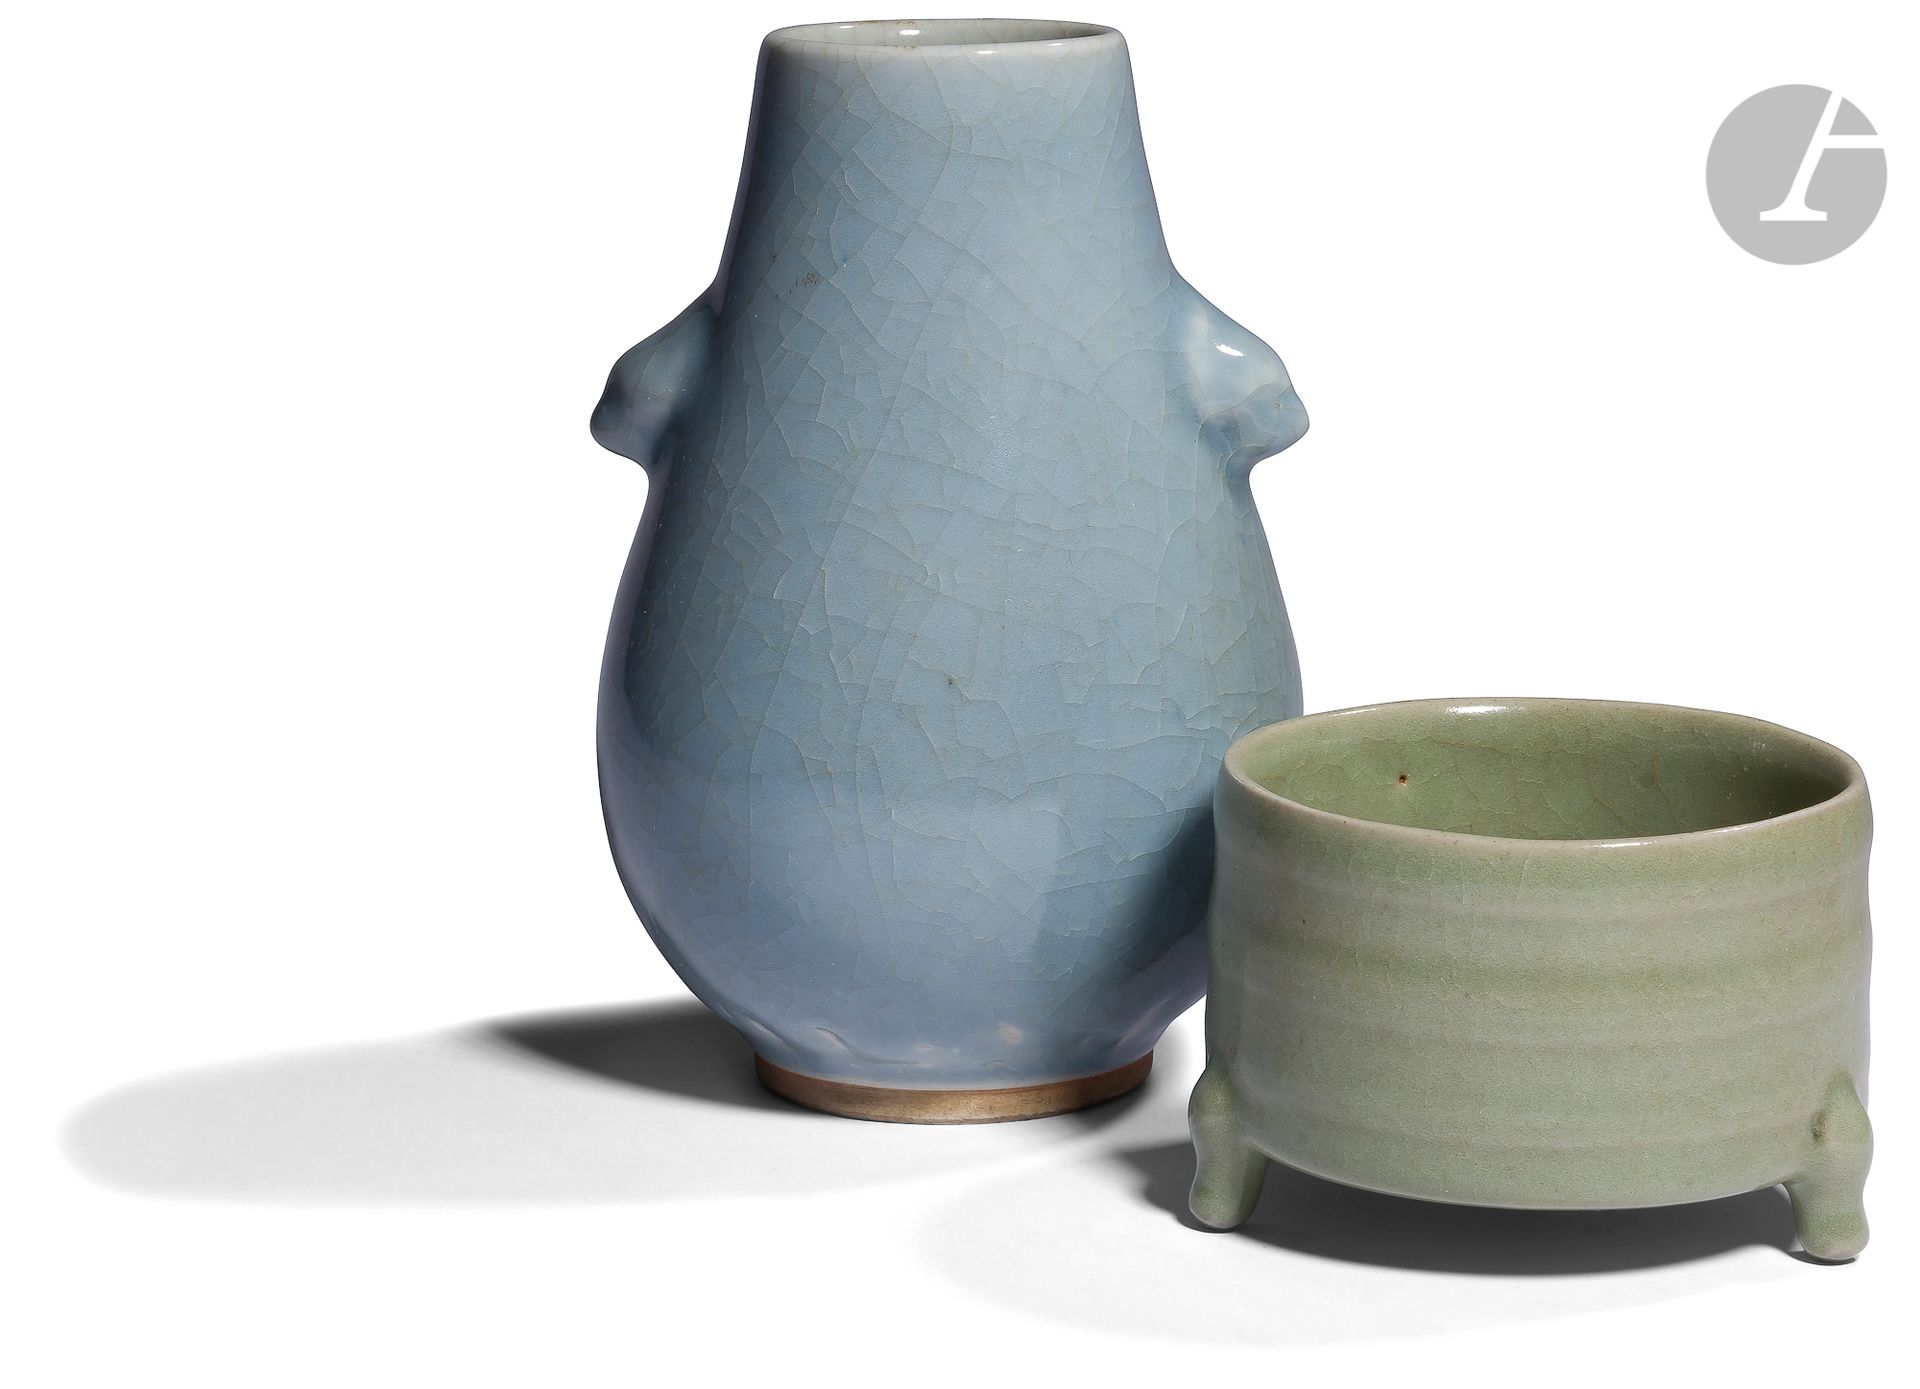 Null 花瓶和香炉，
中国浅蓝色珐琅彩花瓶和青瓷绿色珐琅彩鼎形香炉，裂纹
瓷器。
 
高度：7.6和19.5厘米
拍卖会由波蒂埃公司提供